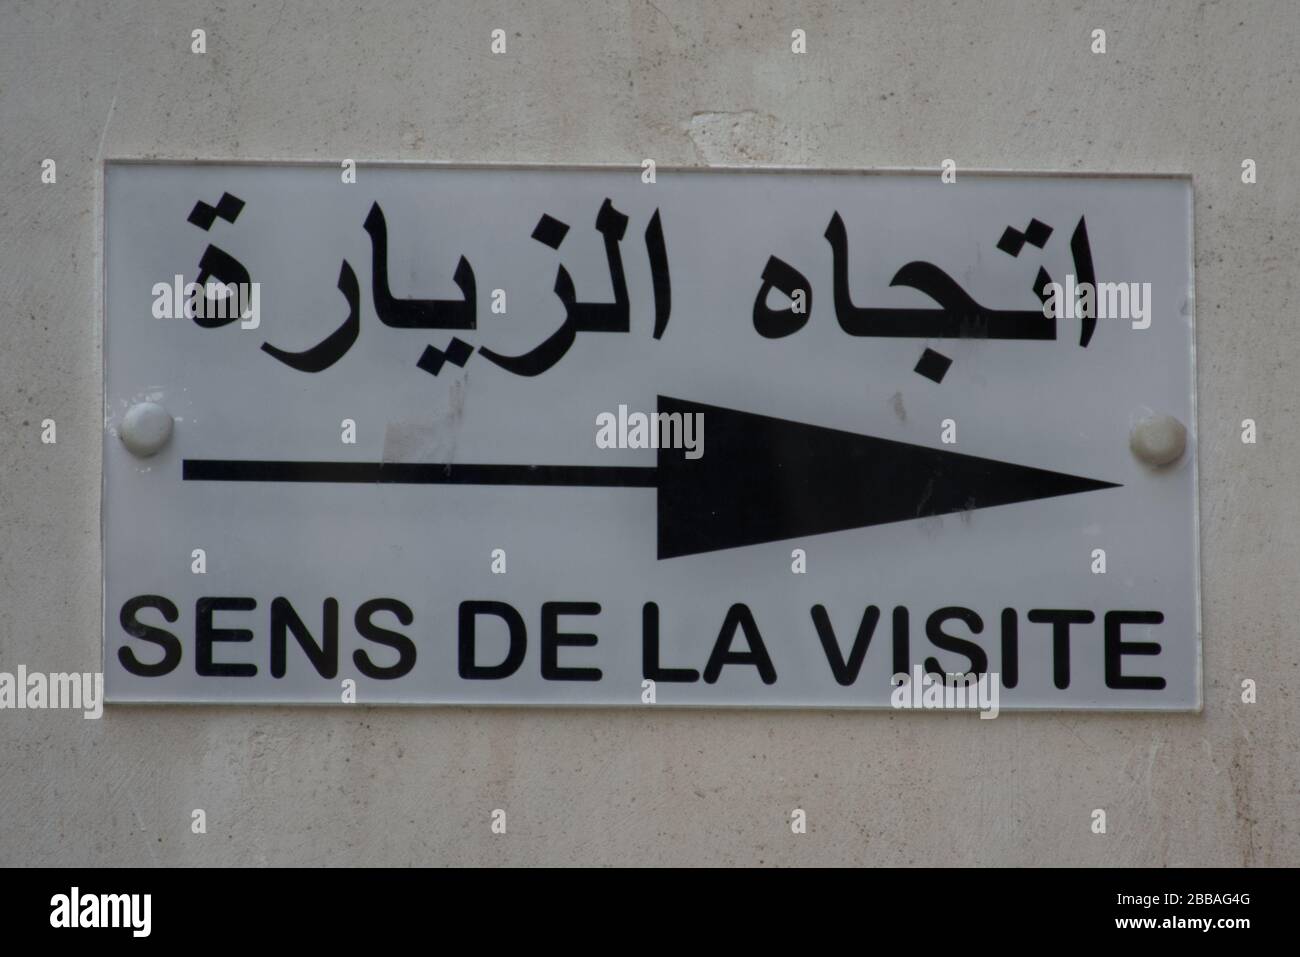 Un signe directionnel en arabe et en français. Le texte traduit des deux langues est -DIRECTION DE LA VISITE-. Banque D'Images